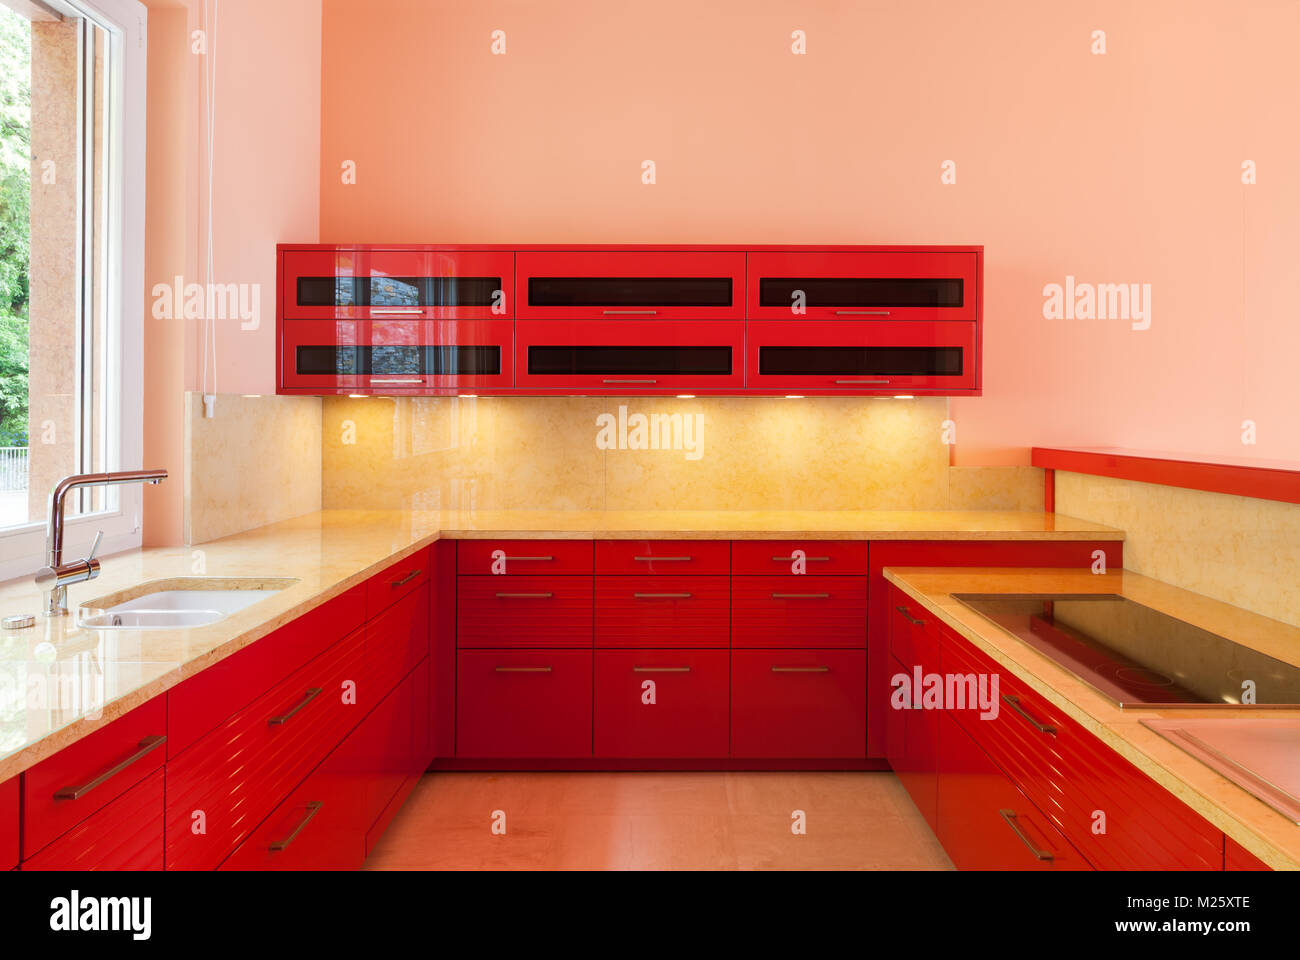 Intérieur d'une villa de luxe avec une cuisine rouge et une fenêtre sur le côté. Vide tout prêt à l'emploi. C'est un environnement particulièrement moderne Banque D'Images